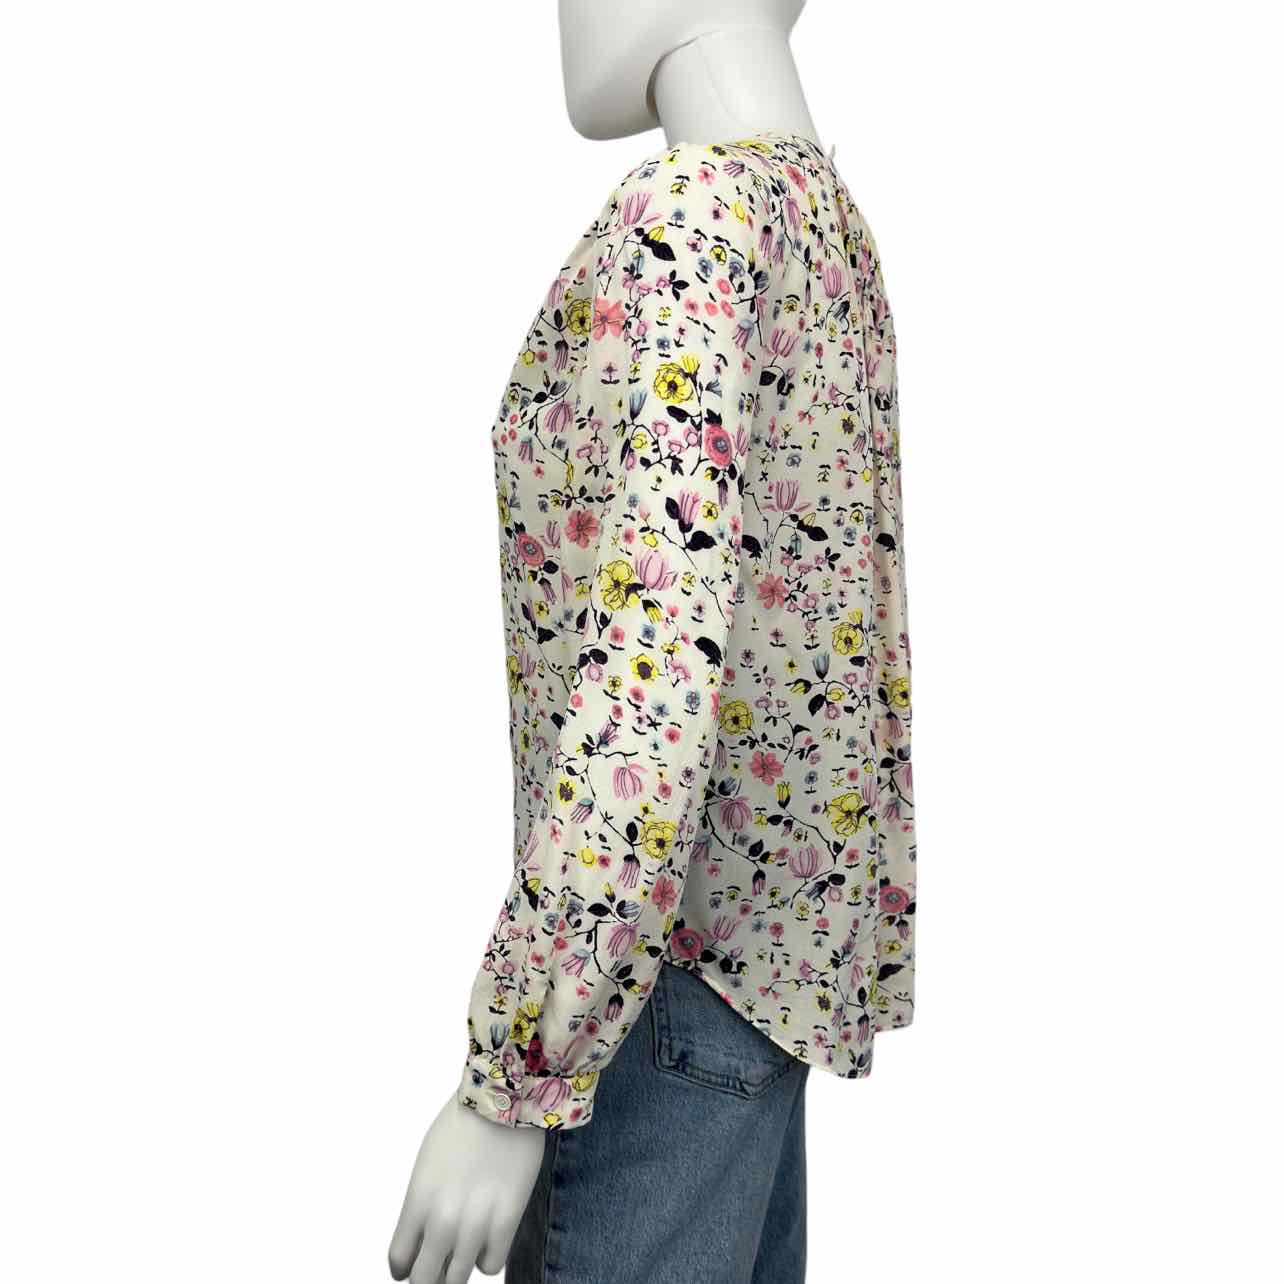 Rebecca Taylor Multi-Colored Silk Floral Print Popover Top Size 4